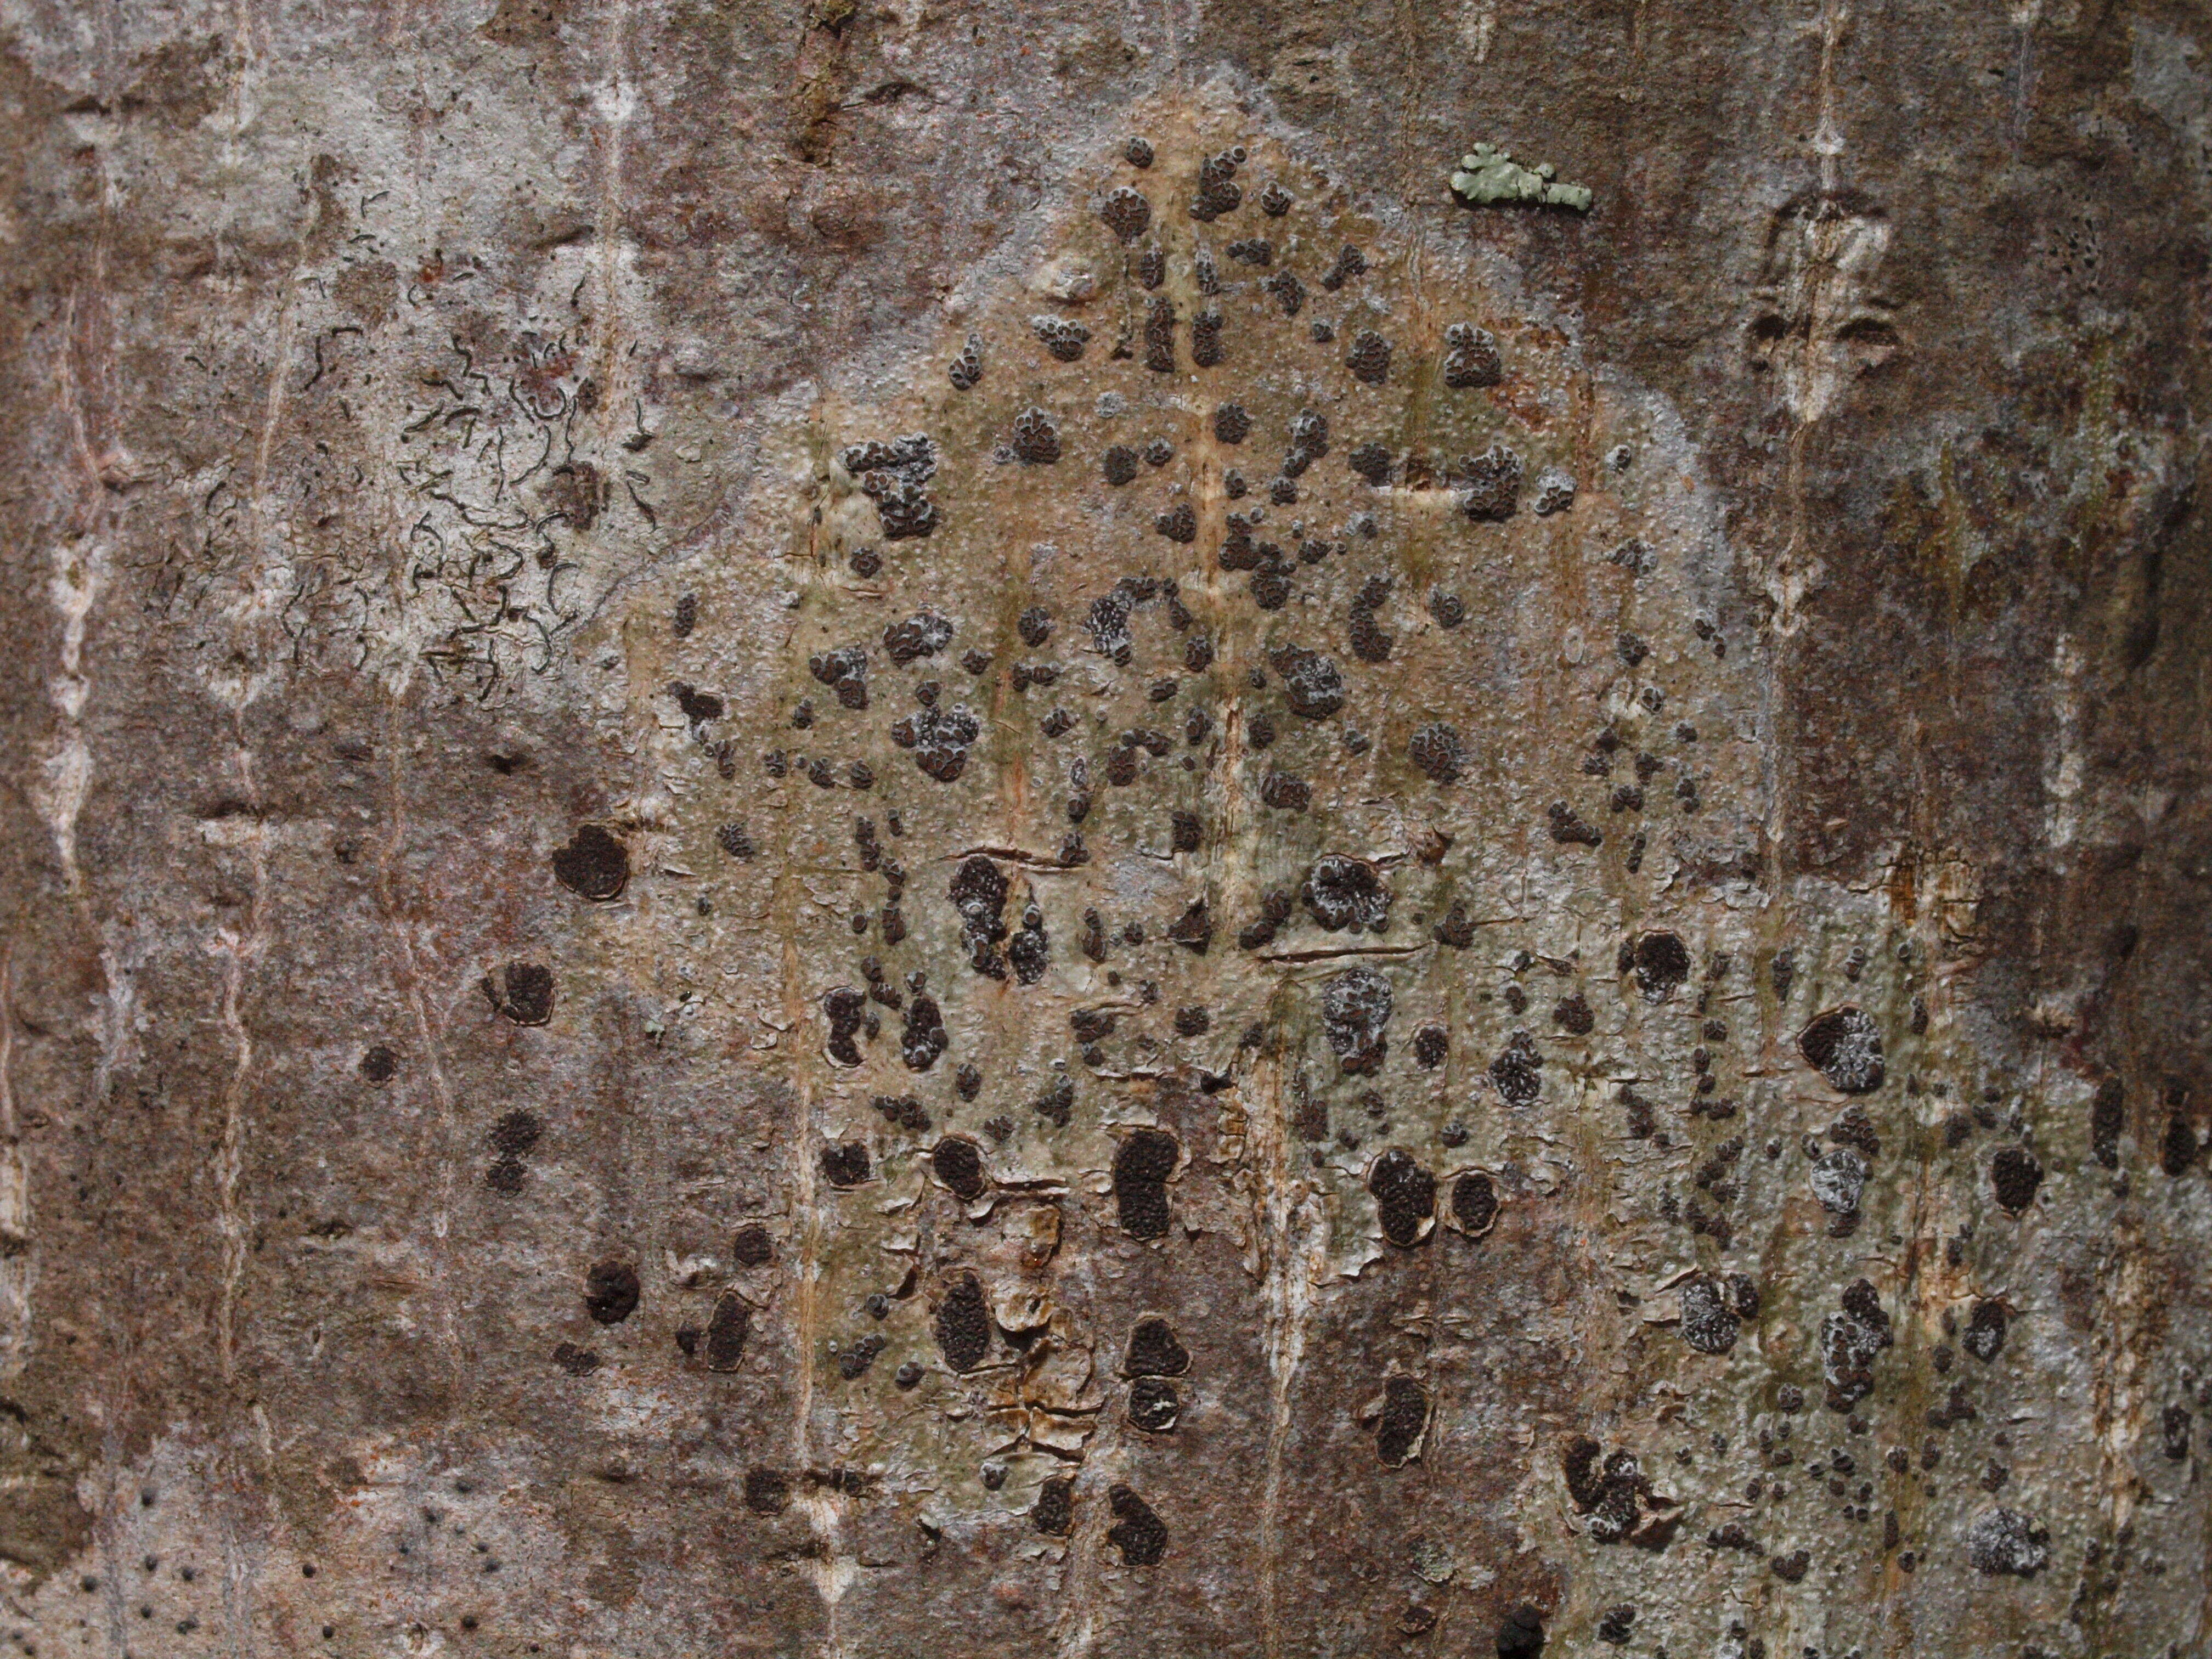 Image of glyphis lichen